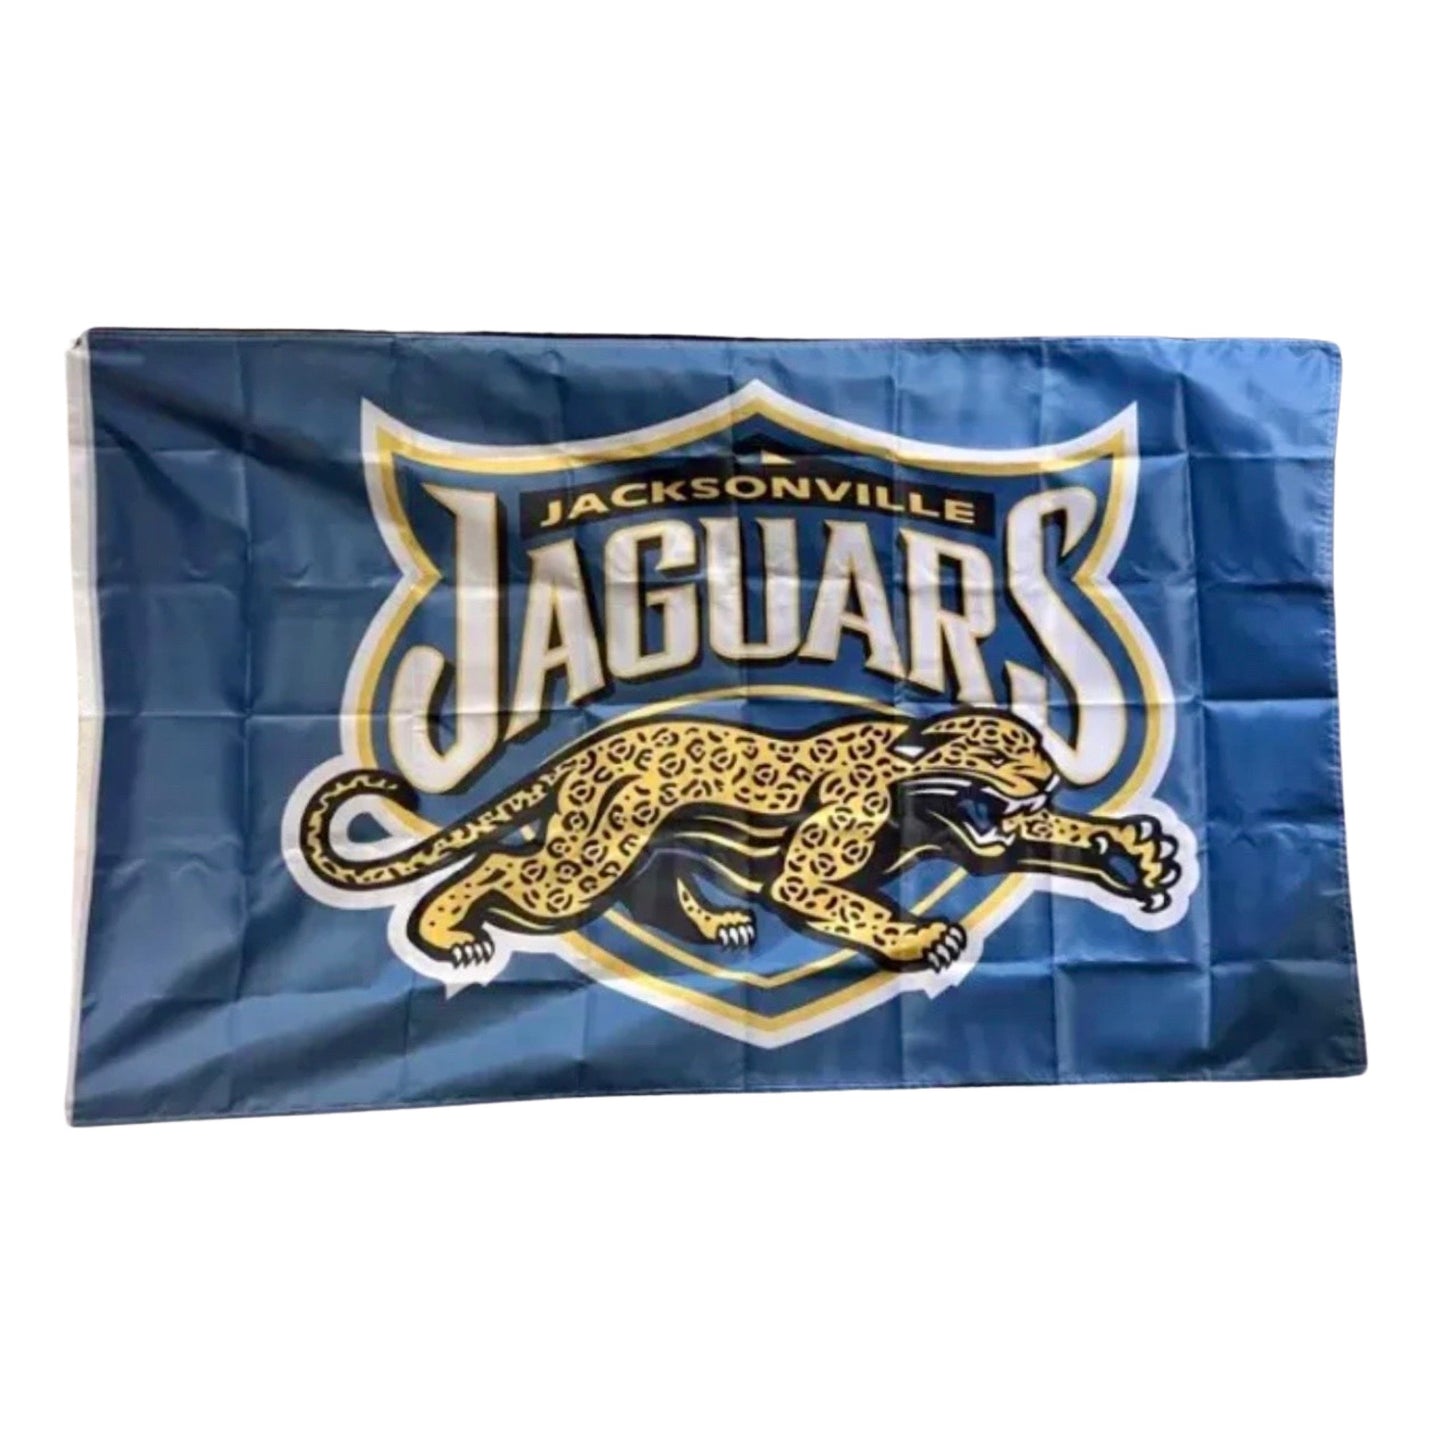 Vintage Jacksonville Jaguars flag